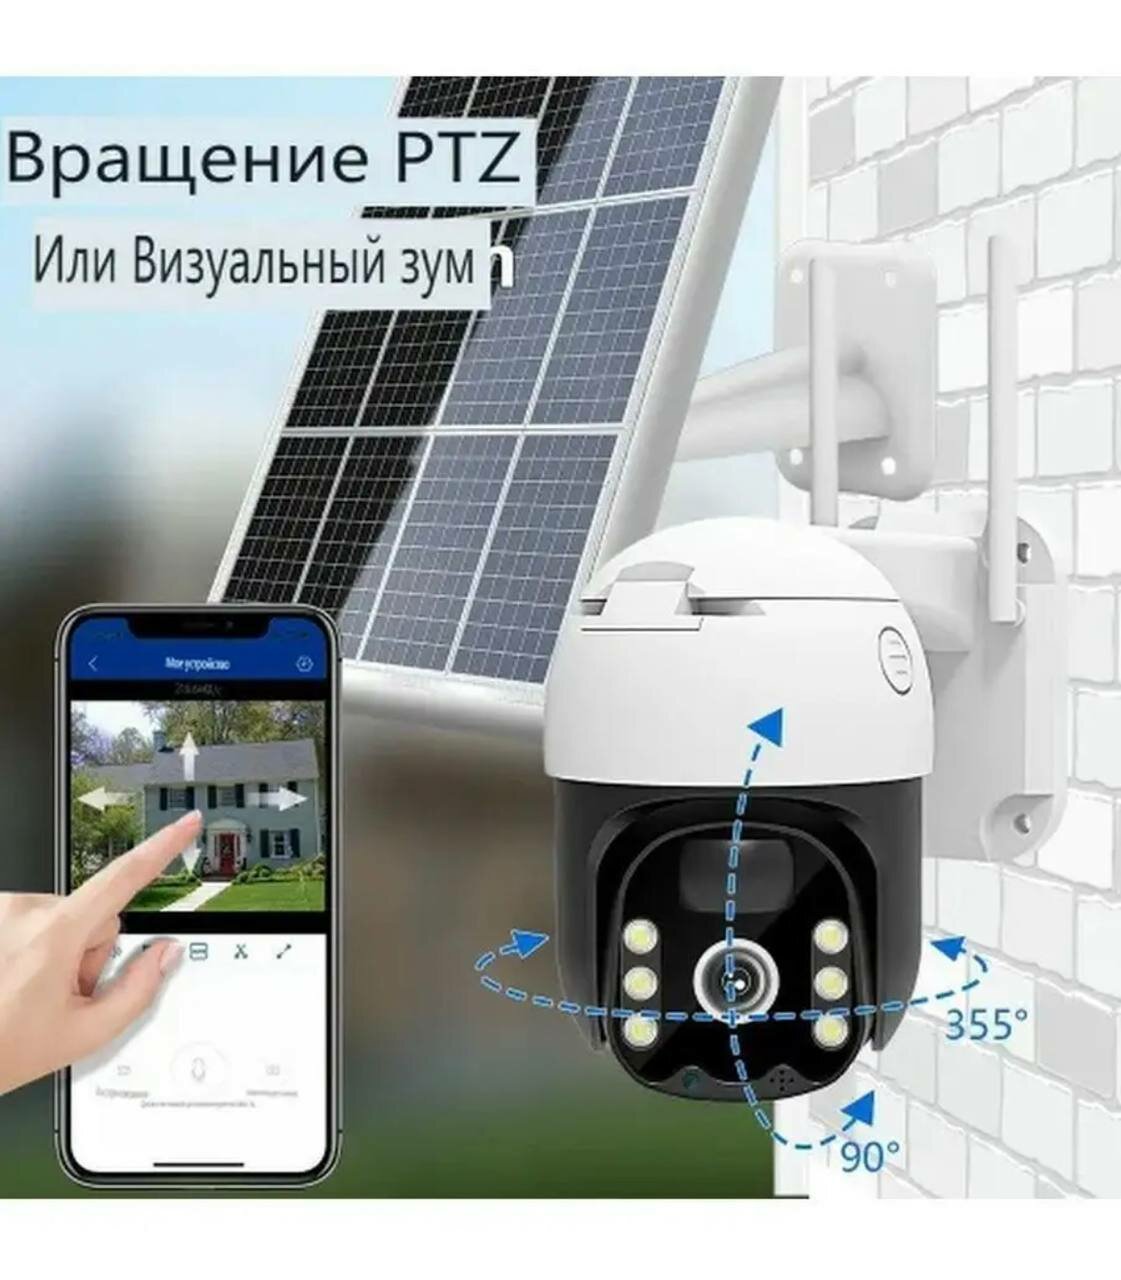 Беспроводная поворотная уличная камера, видеонаблюдения с солнечной панелью, ИК-подсветкой и датчиками движения